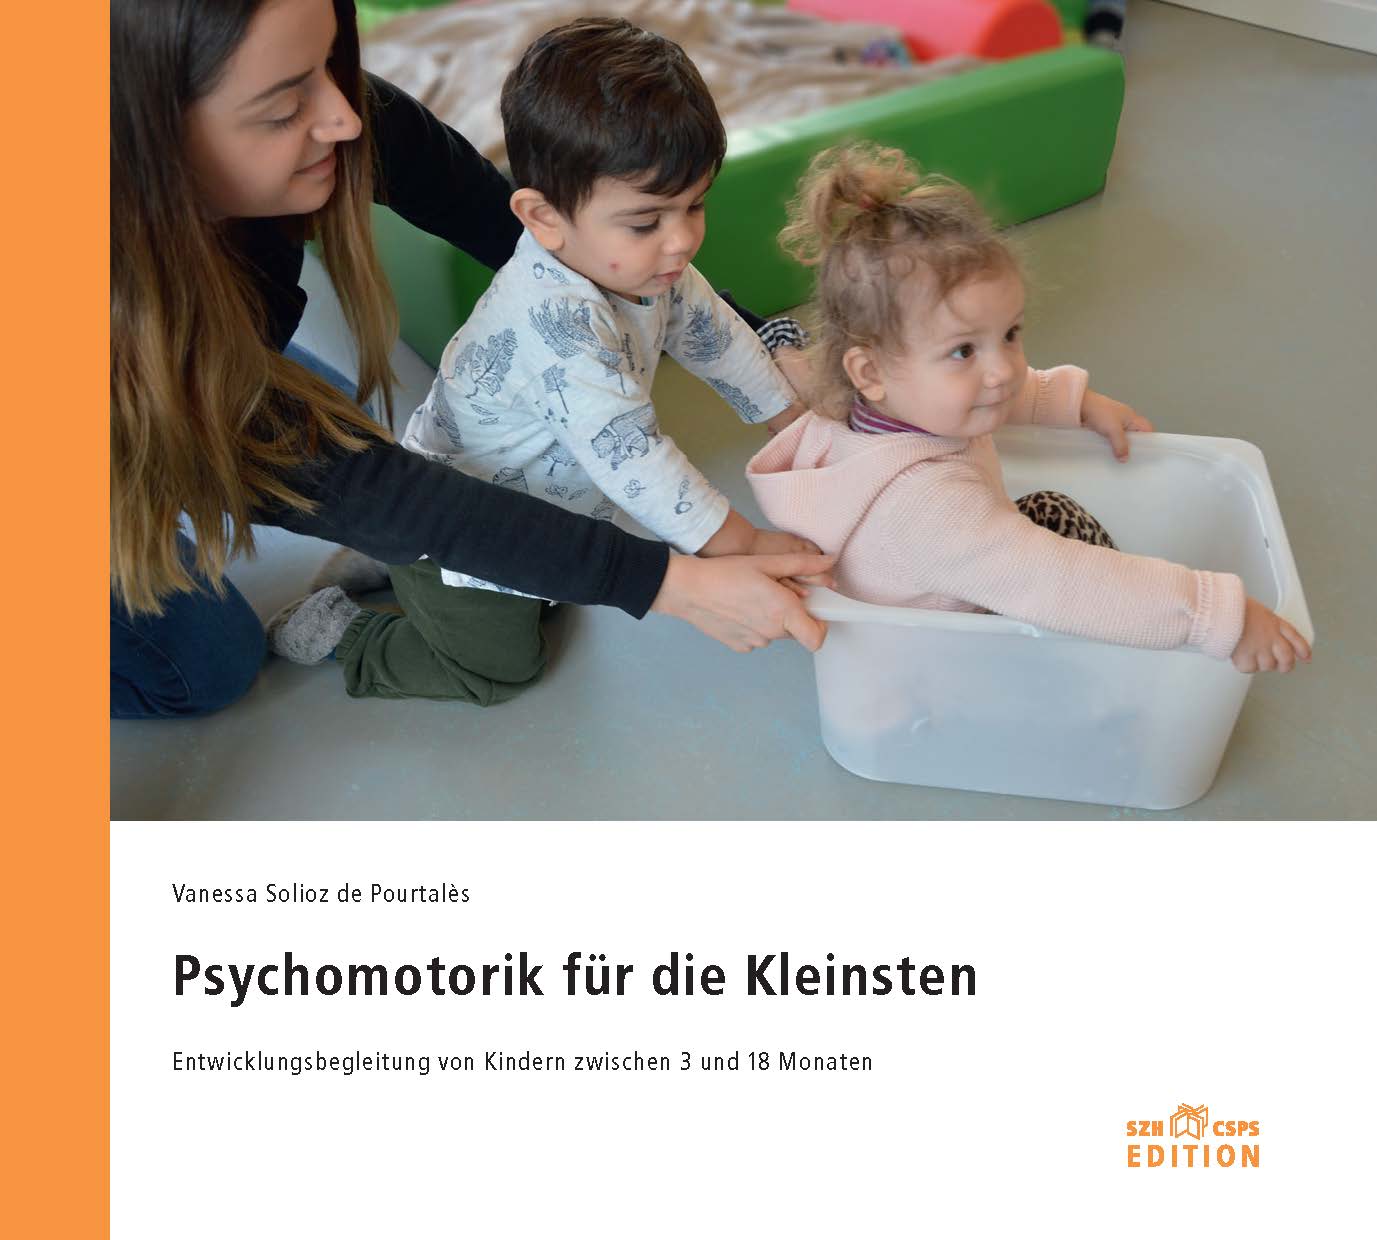  L’image montre la couverture du livre. On y voit une photo avec deux jeunes enfants et un thérapeute au travail thérapeutique. 